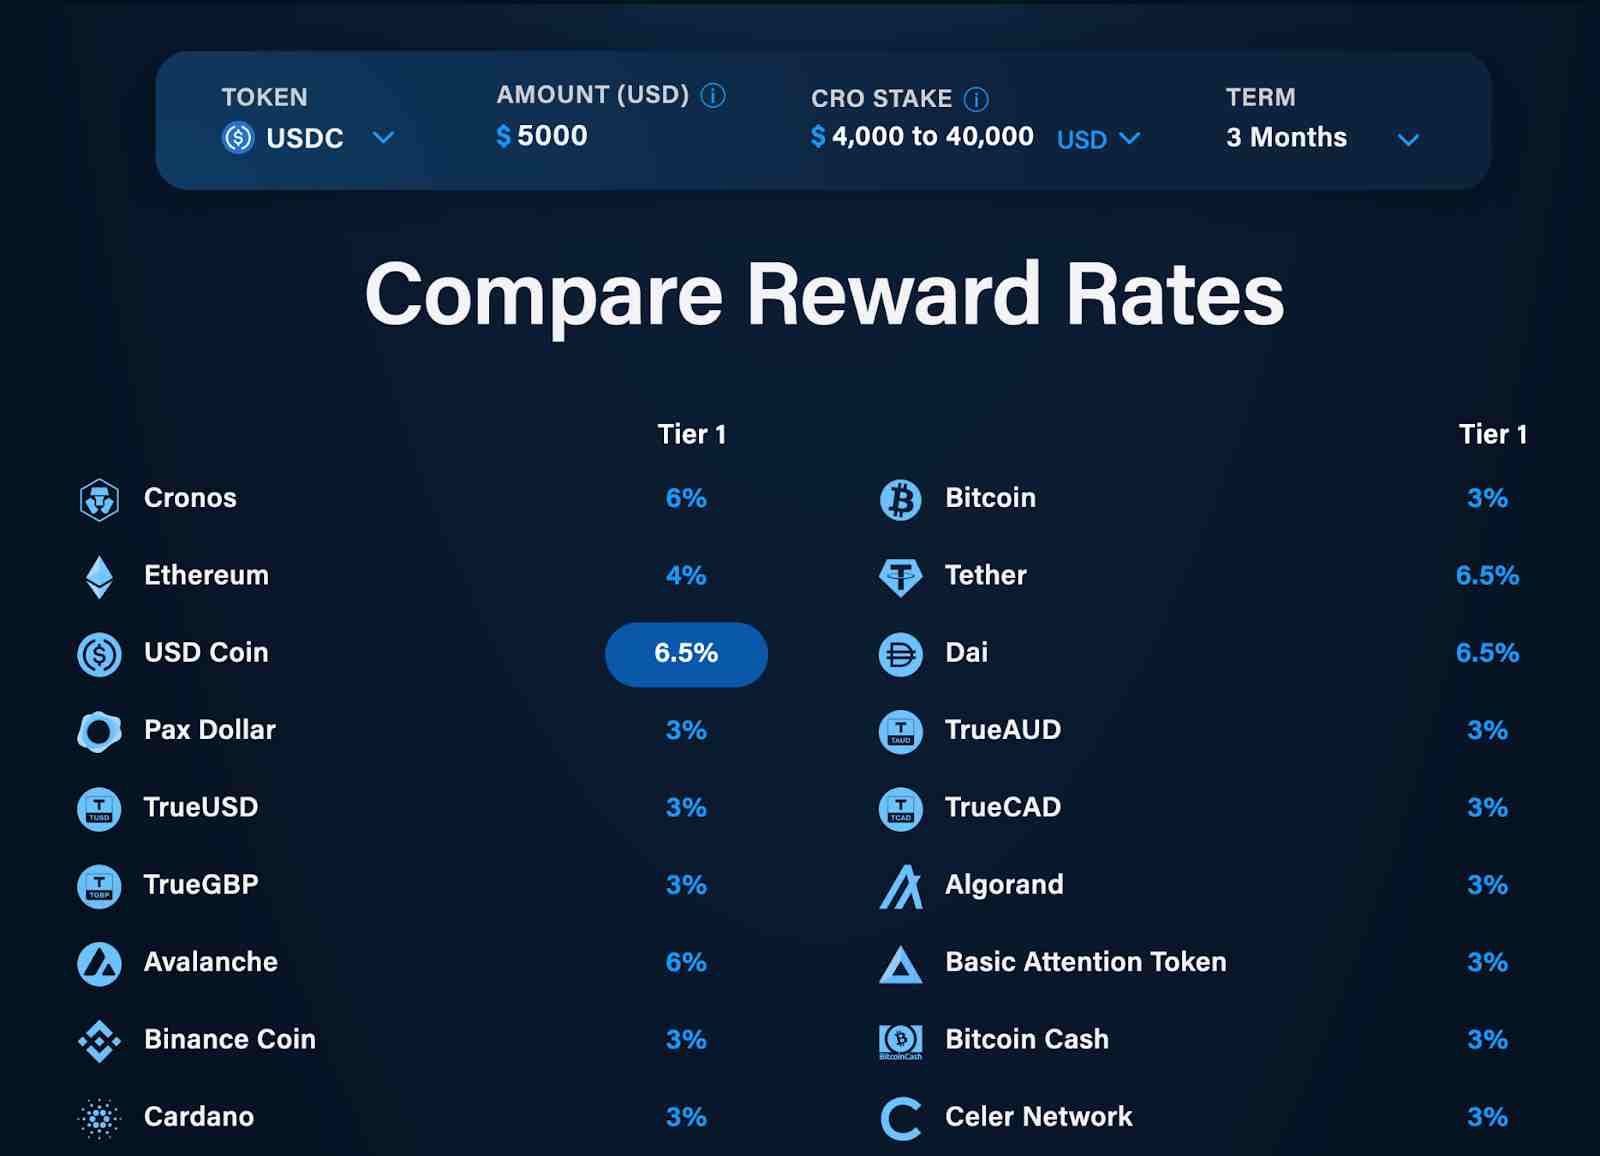 Crypto.com rewards